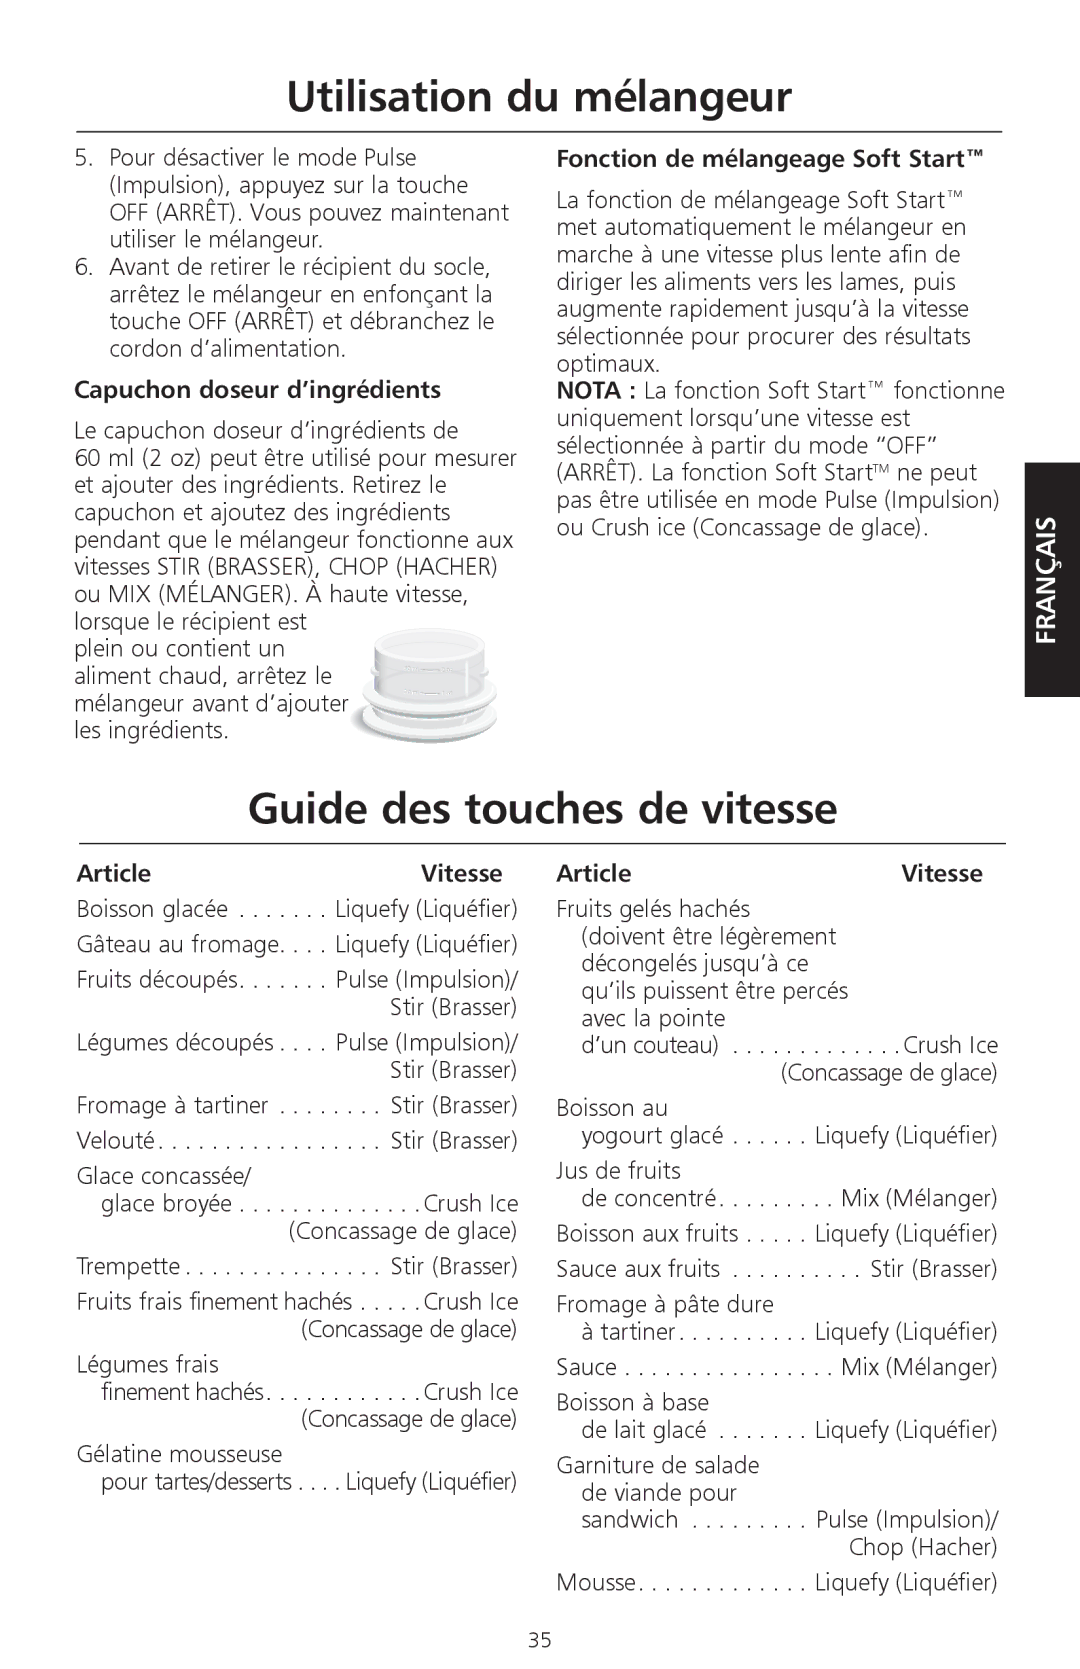 KitchenAid KSB580, KSB560 Guide des touches de vitesse, Capuchon doseur d’ingrédients, Fonction de mélangeage Soft Start 